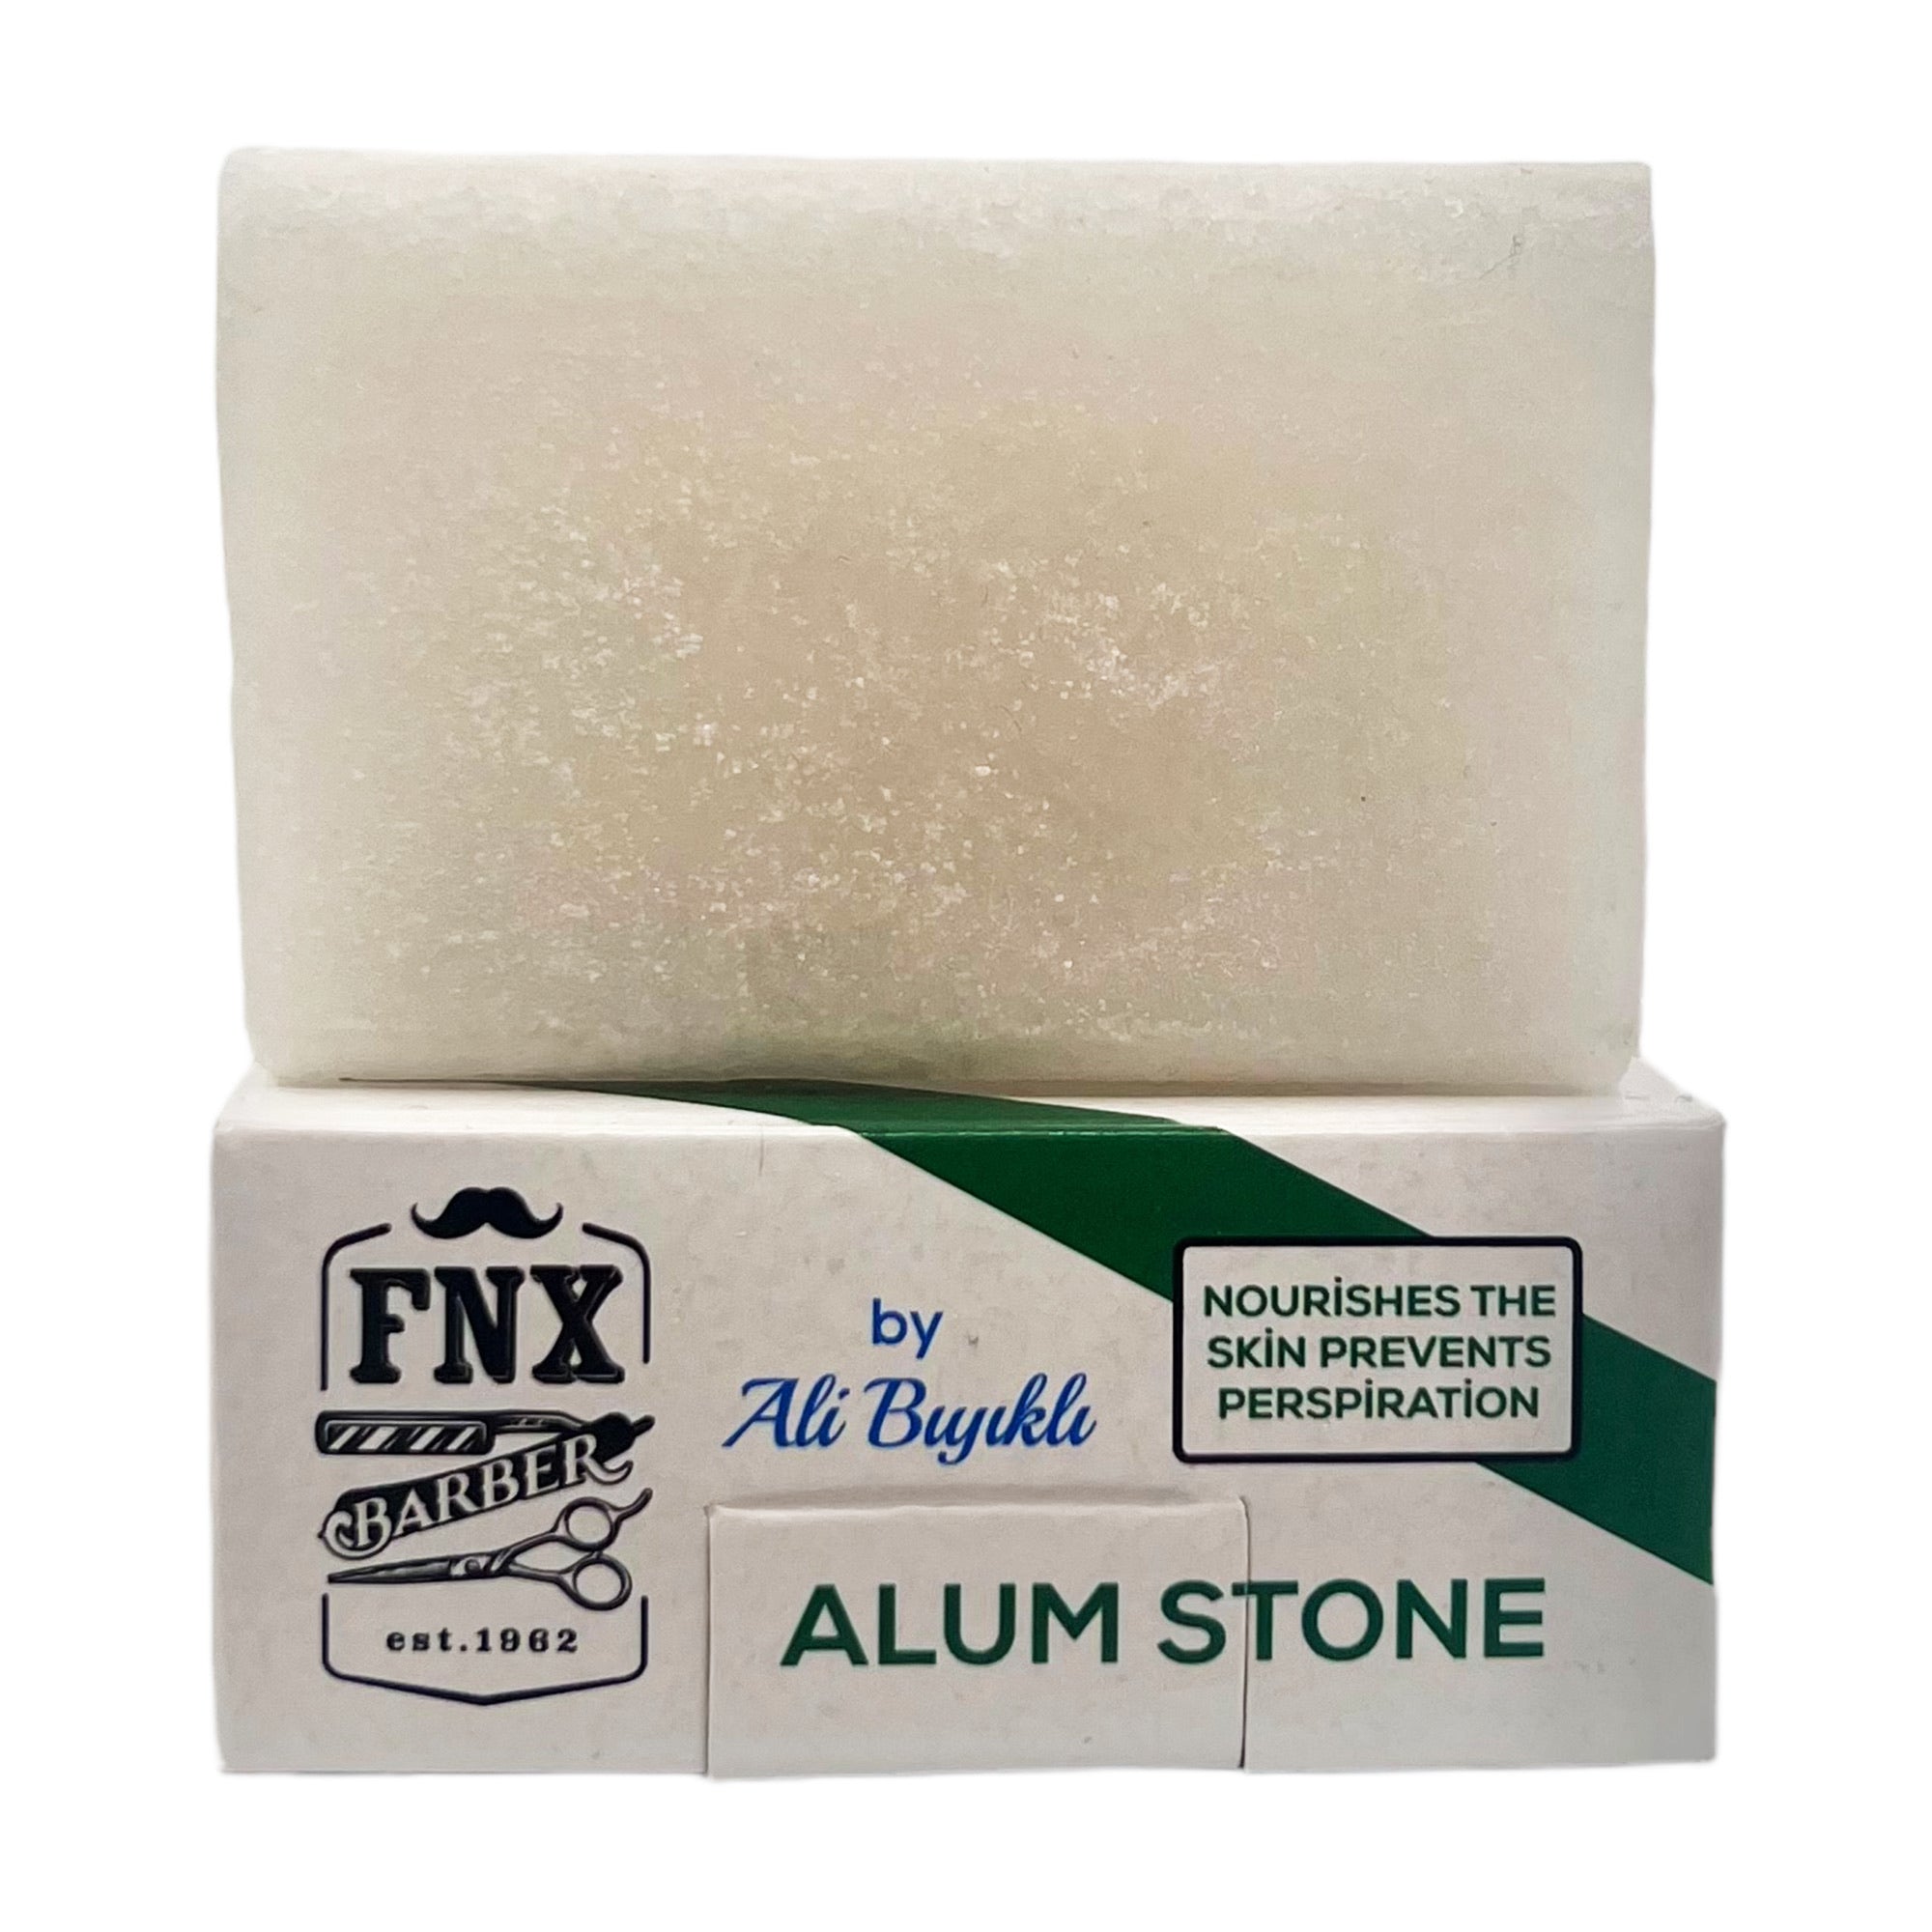 FNX Barber - Alum Stone by Ali Biyikli